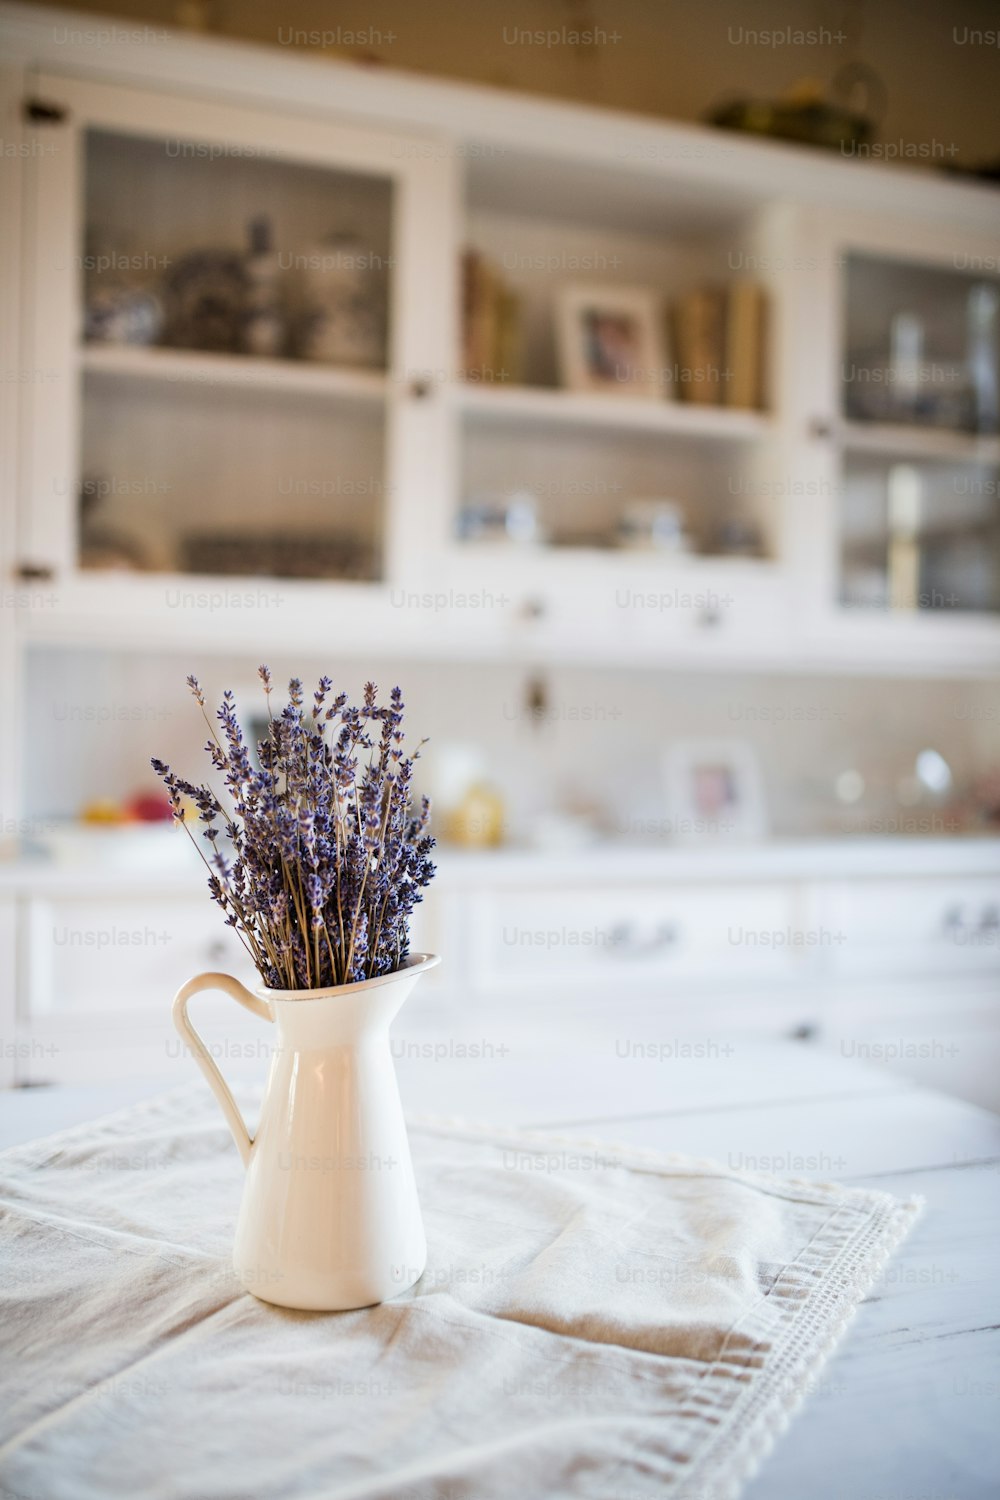 ビンテージ キッチンのテーブルの上の白い花瓶にラベンダーの束を乾燥させます の写真 花 Unsplashの写真